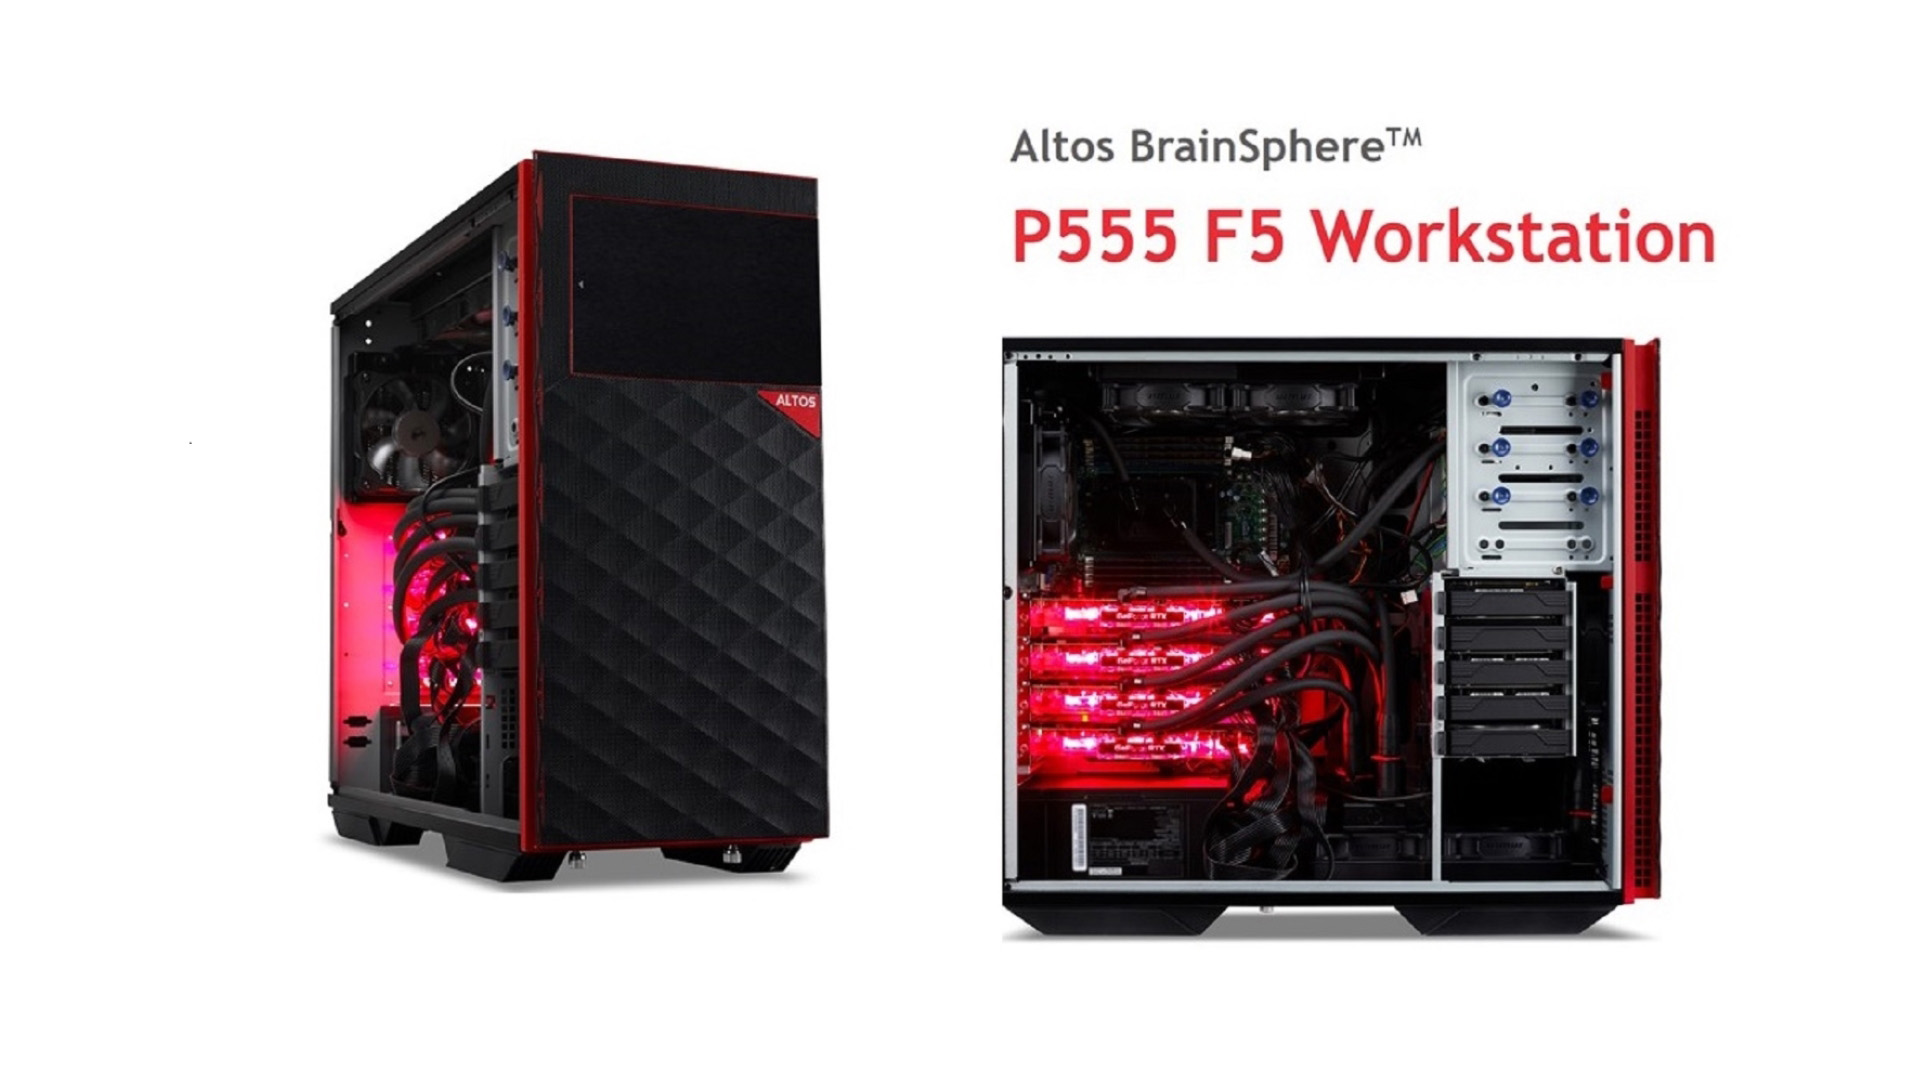 เปิดตัว Altos BrainSphere P555 F5 ไฮเอนด์เวิร์กสเตชั่น มาพร้อมซีพียู AMD EPYC 7003 Series